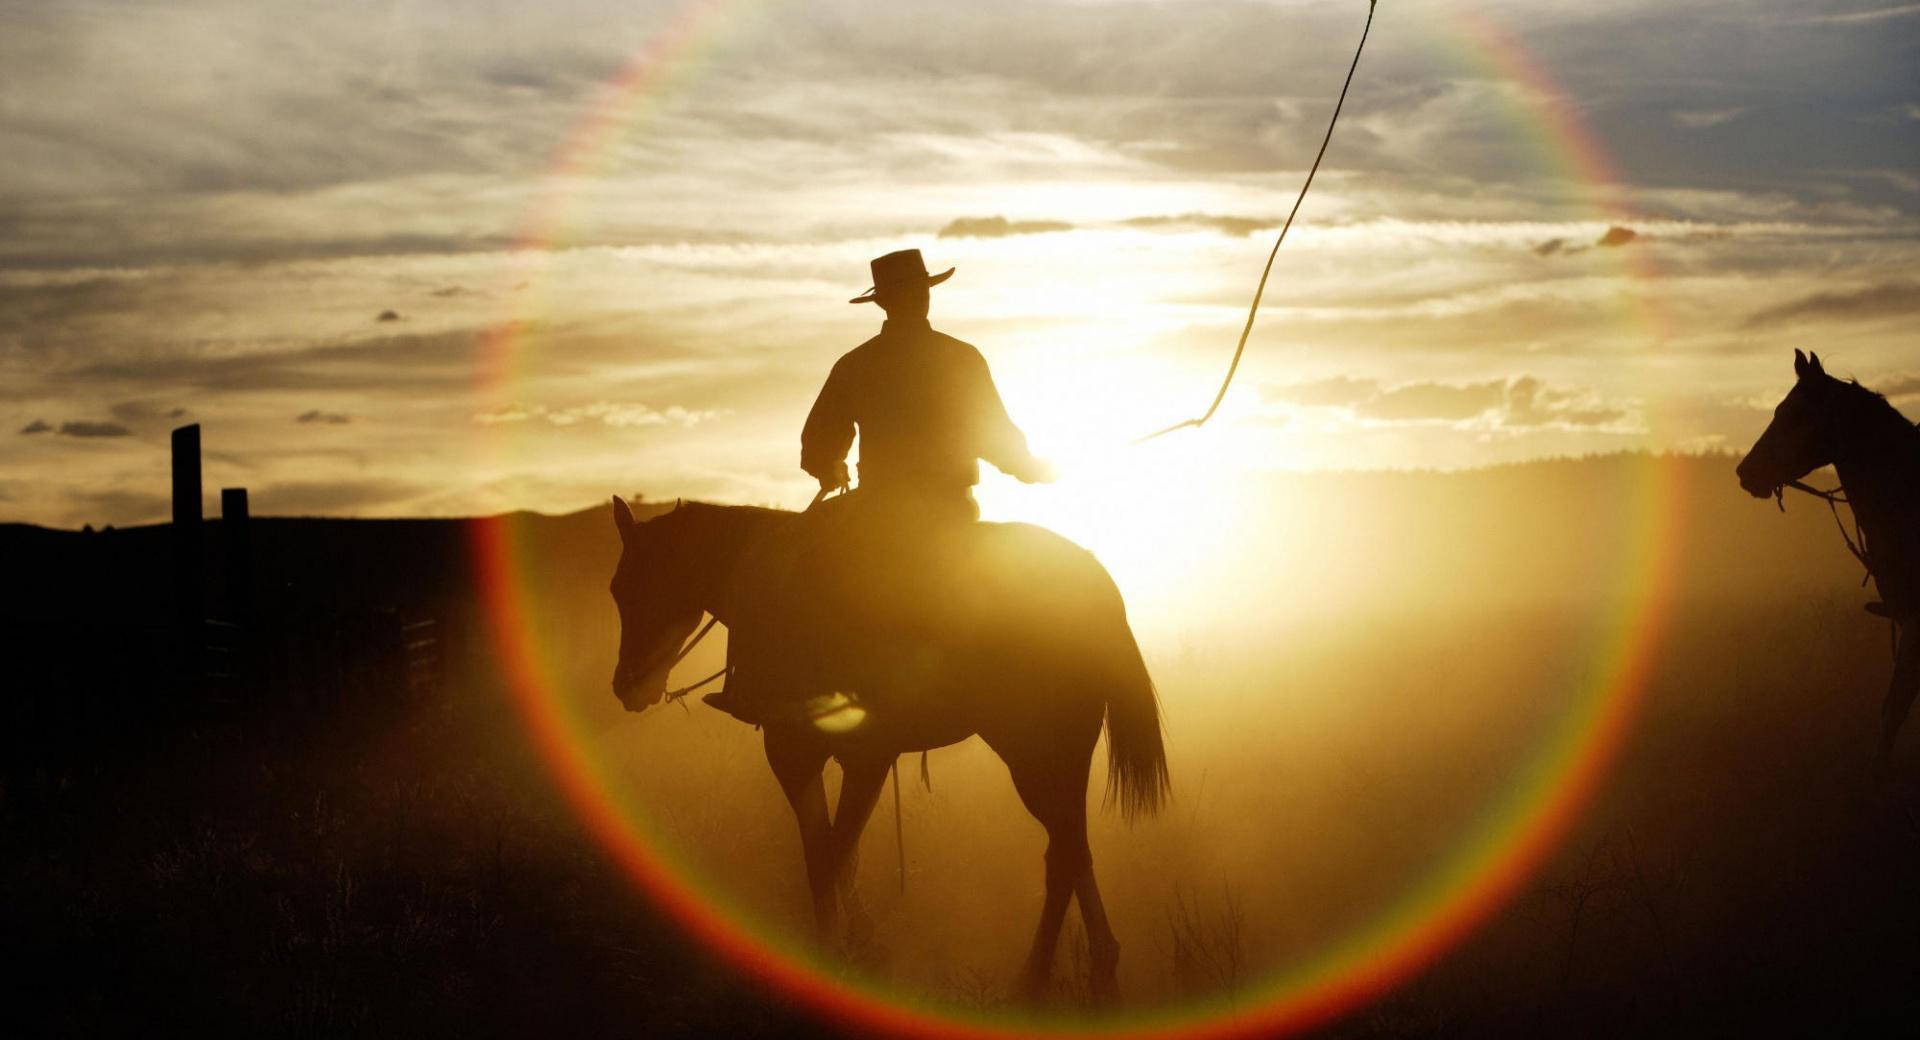 Quarter Horse Ponderosa Ranch Seneca Oregon at 320 x 480 iPhone size wallpapers HD quality